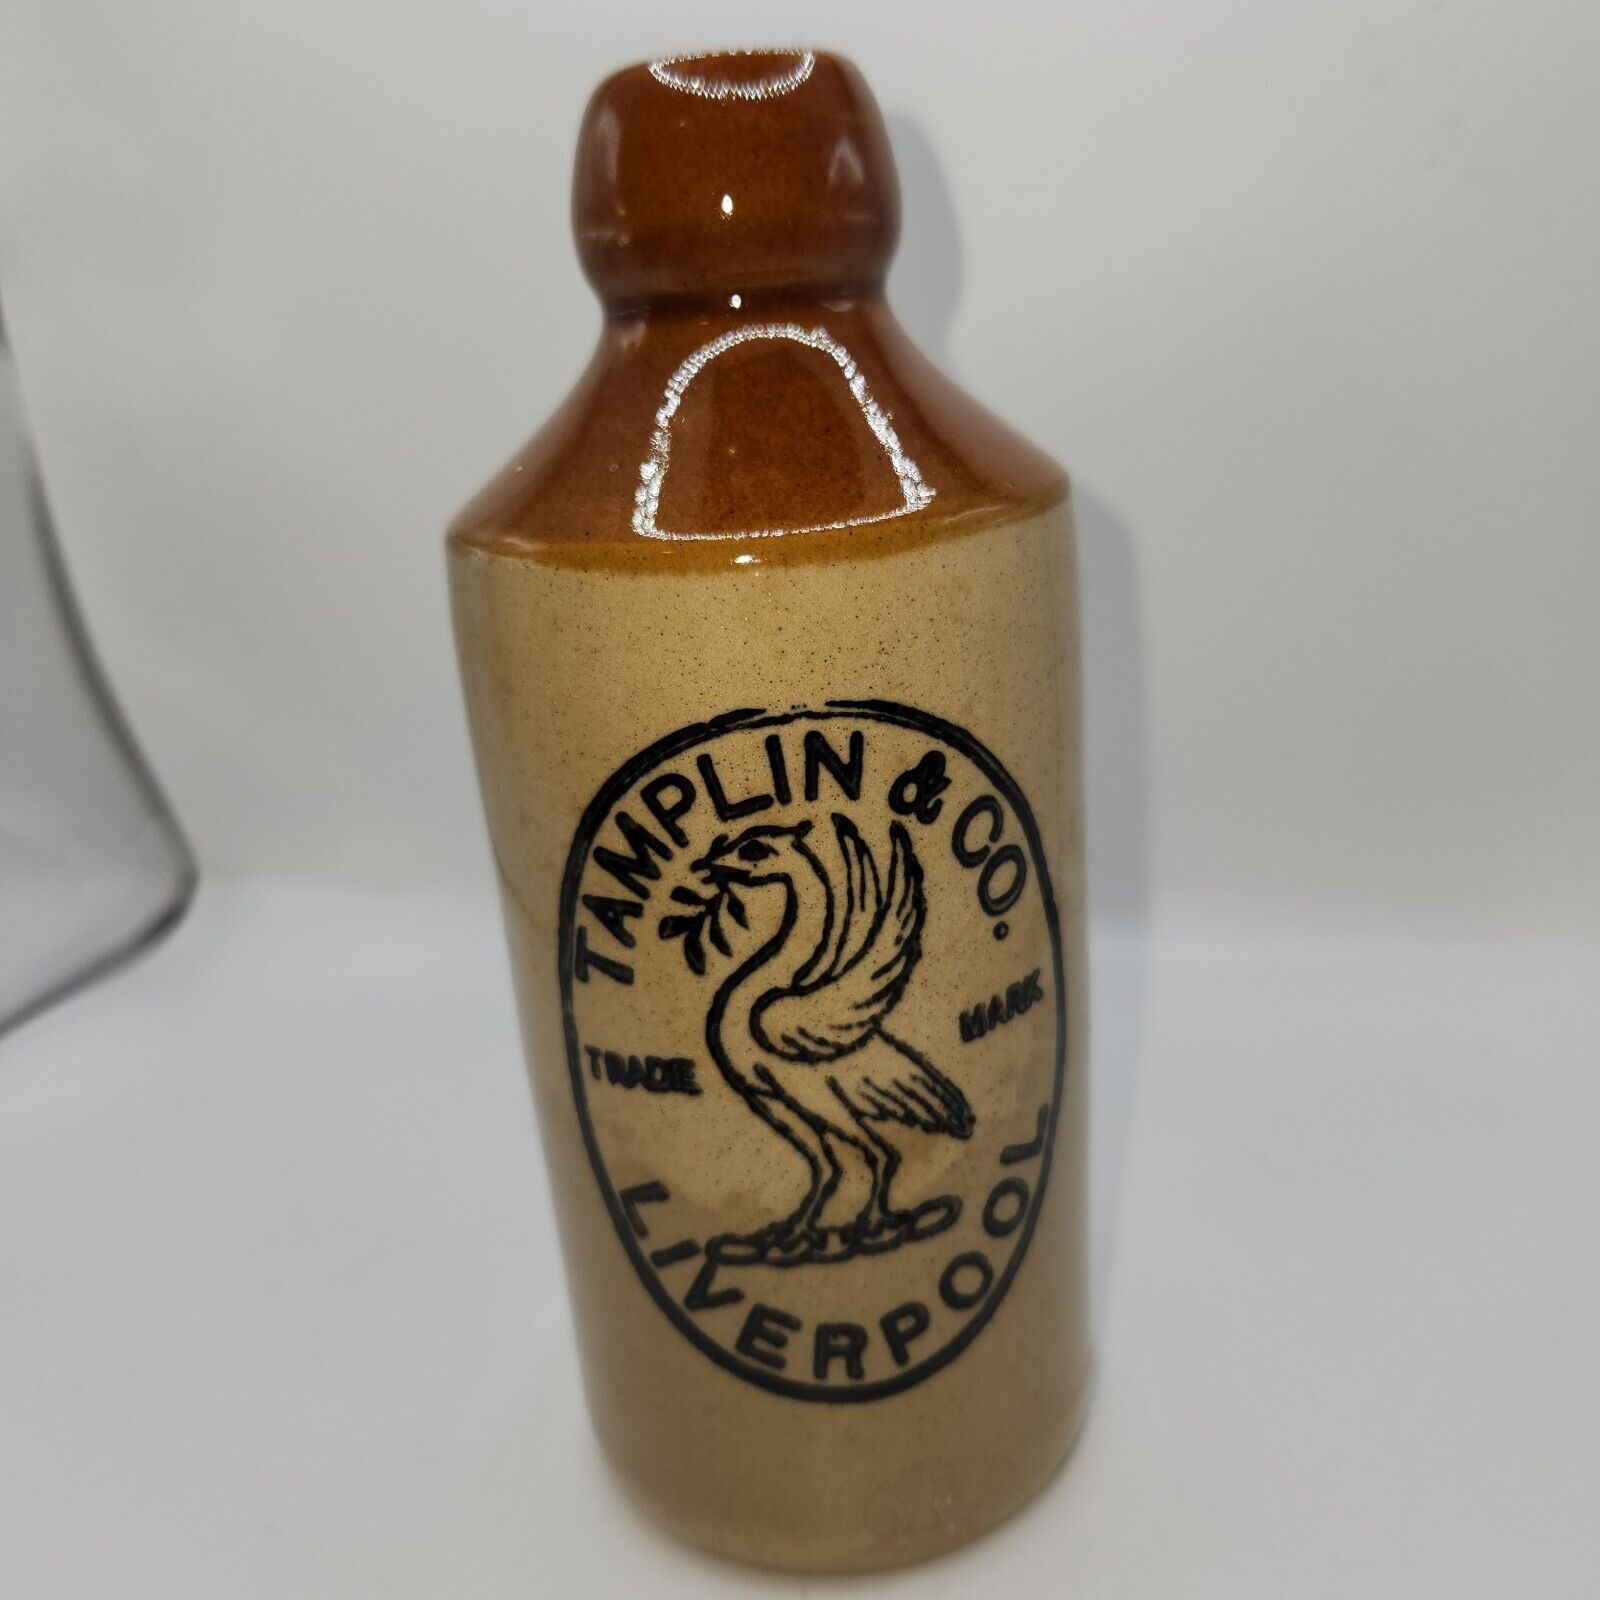 Antique Ginger Beer Bottle Stoneware, Tamplin & Co Liverpool 